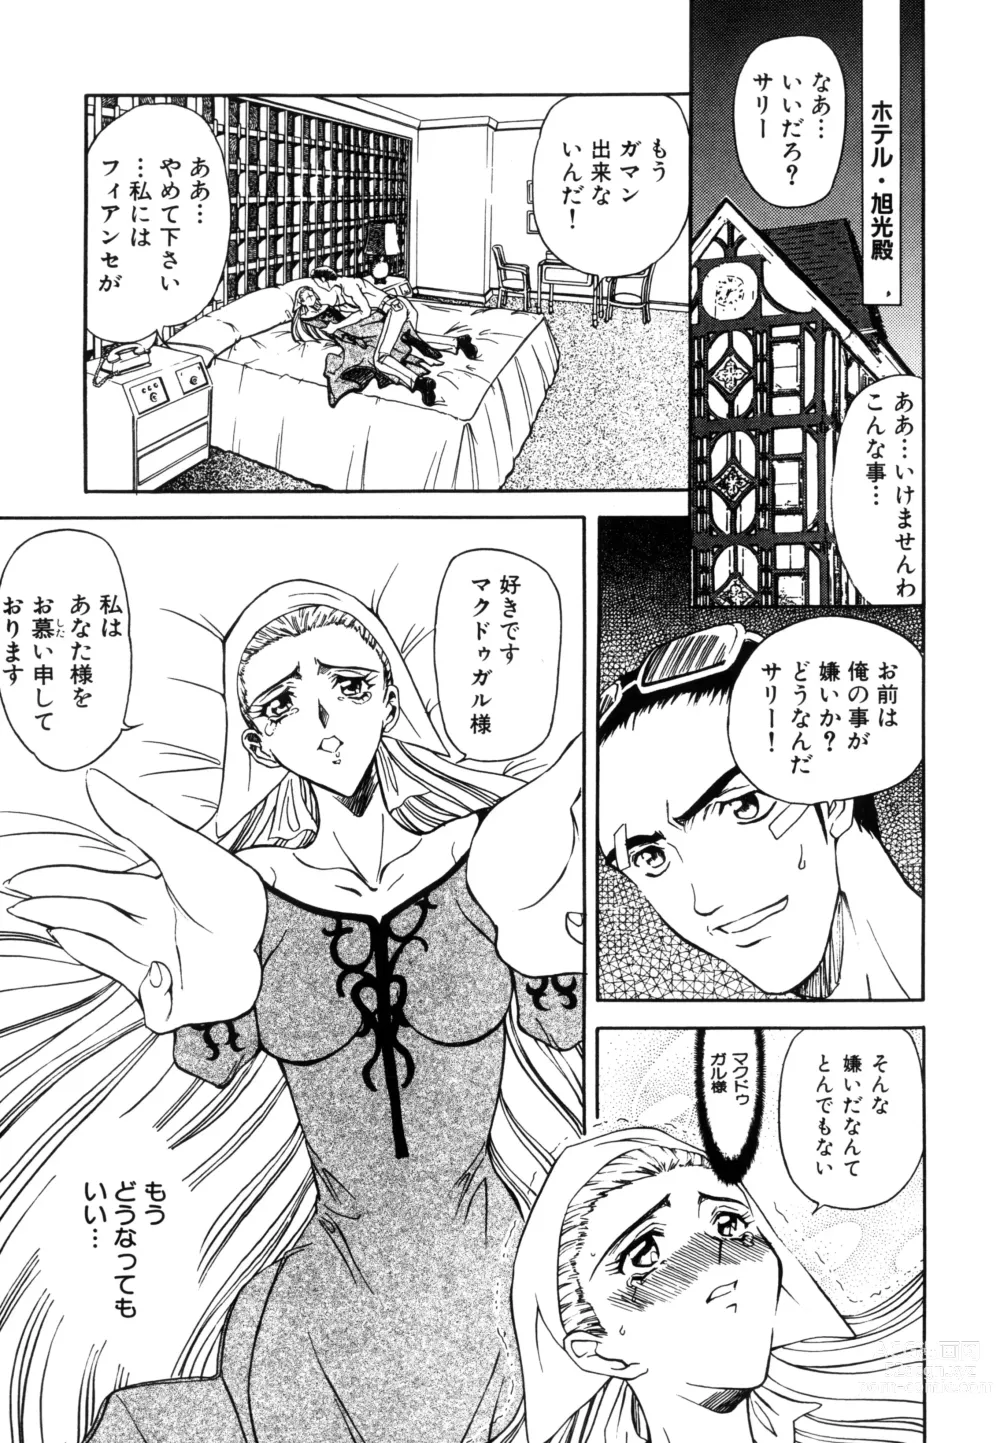 Page 125 of manga Inran Dorei Mama